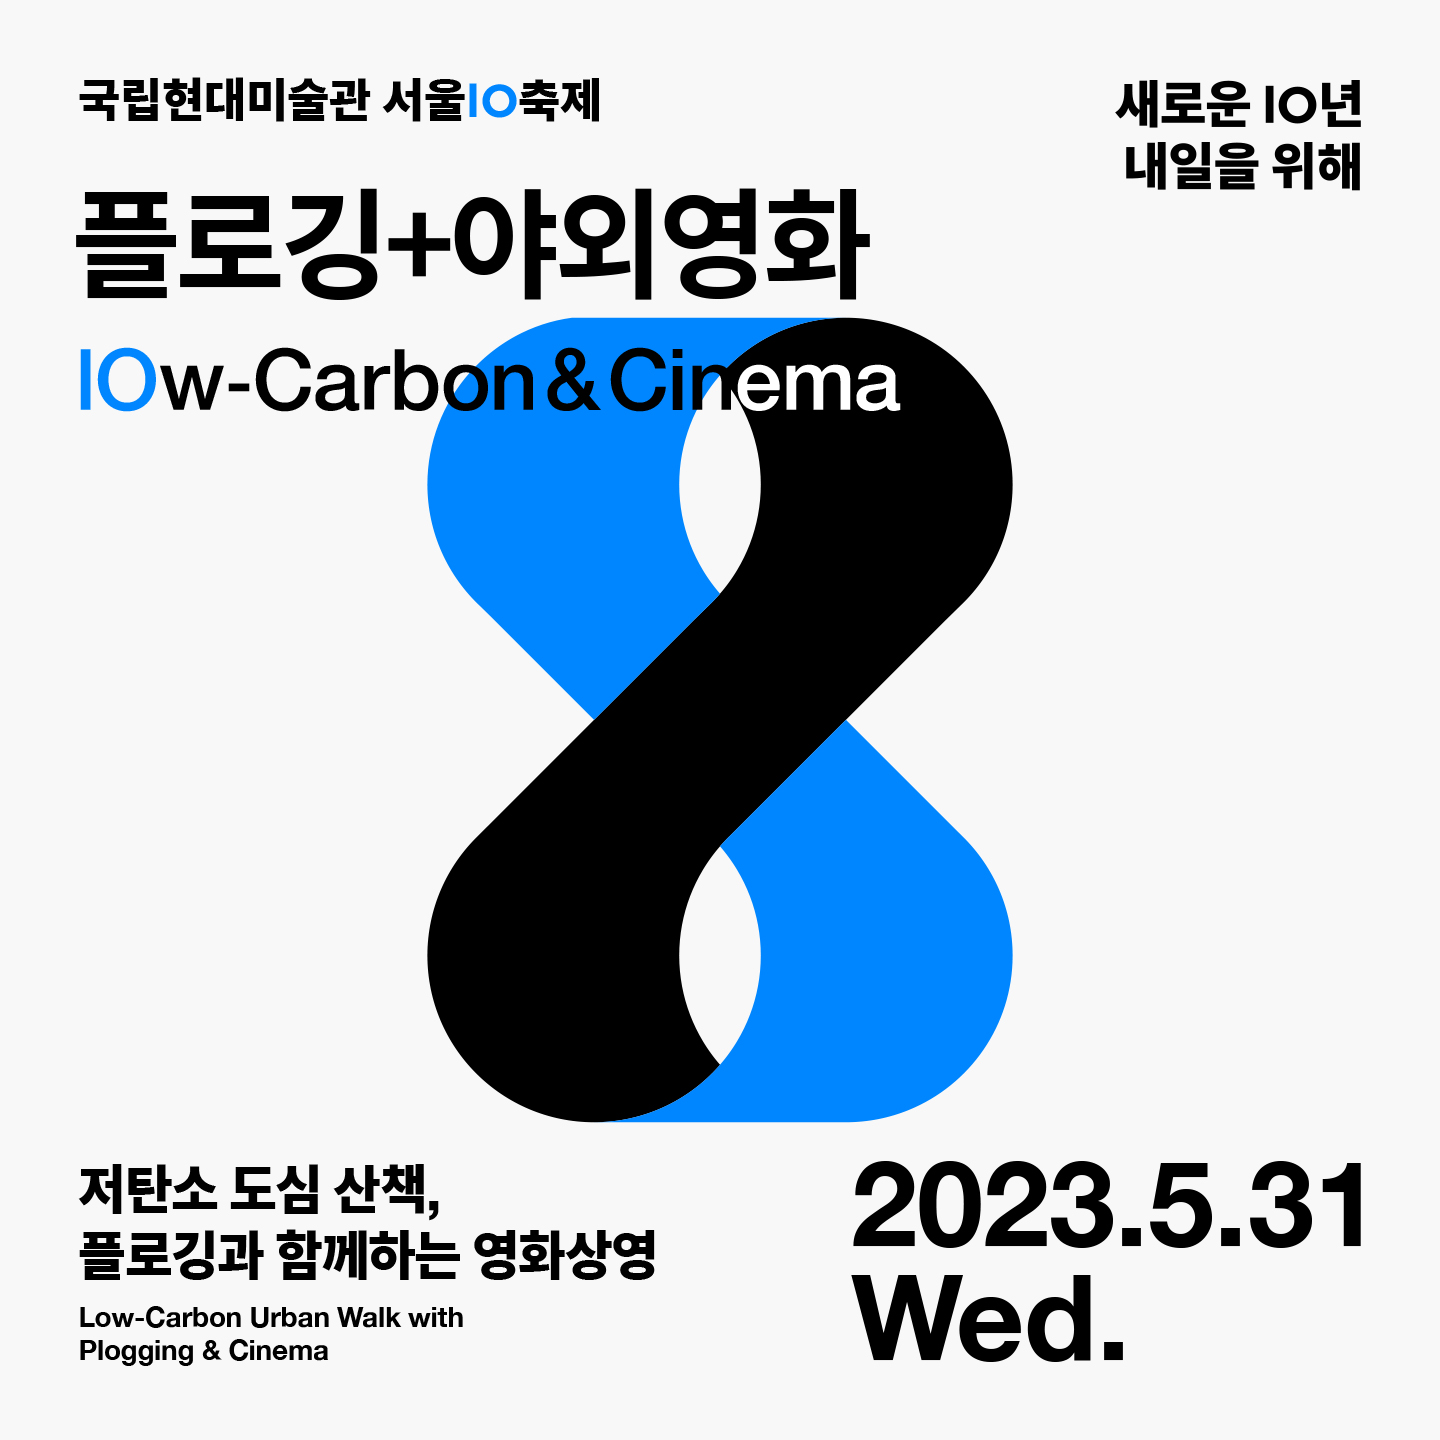 국립현대미술관 서울 IO 축제: 플로깅+야외영화